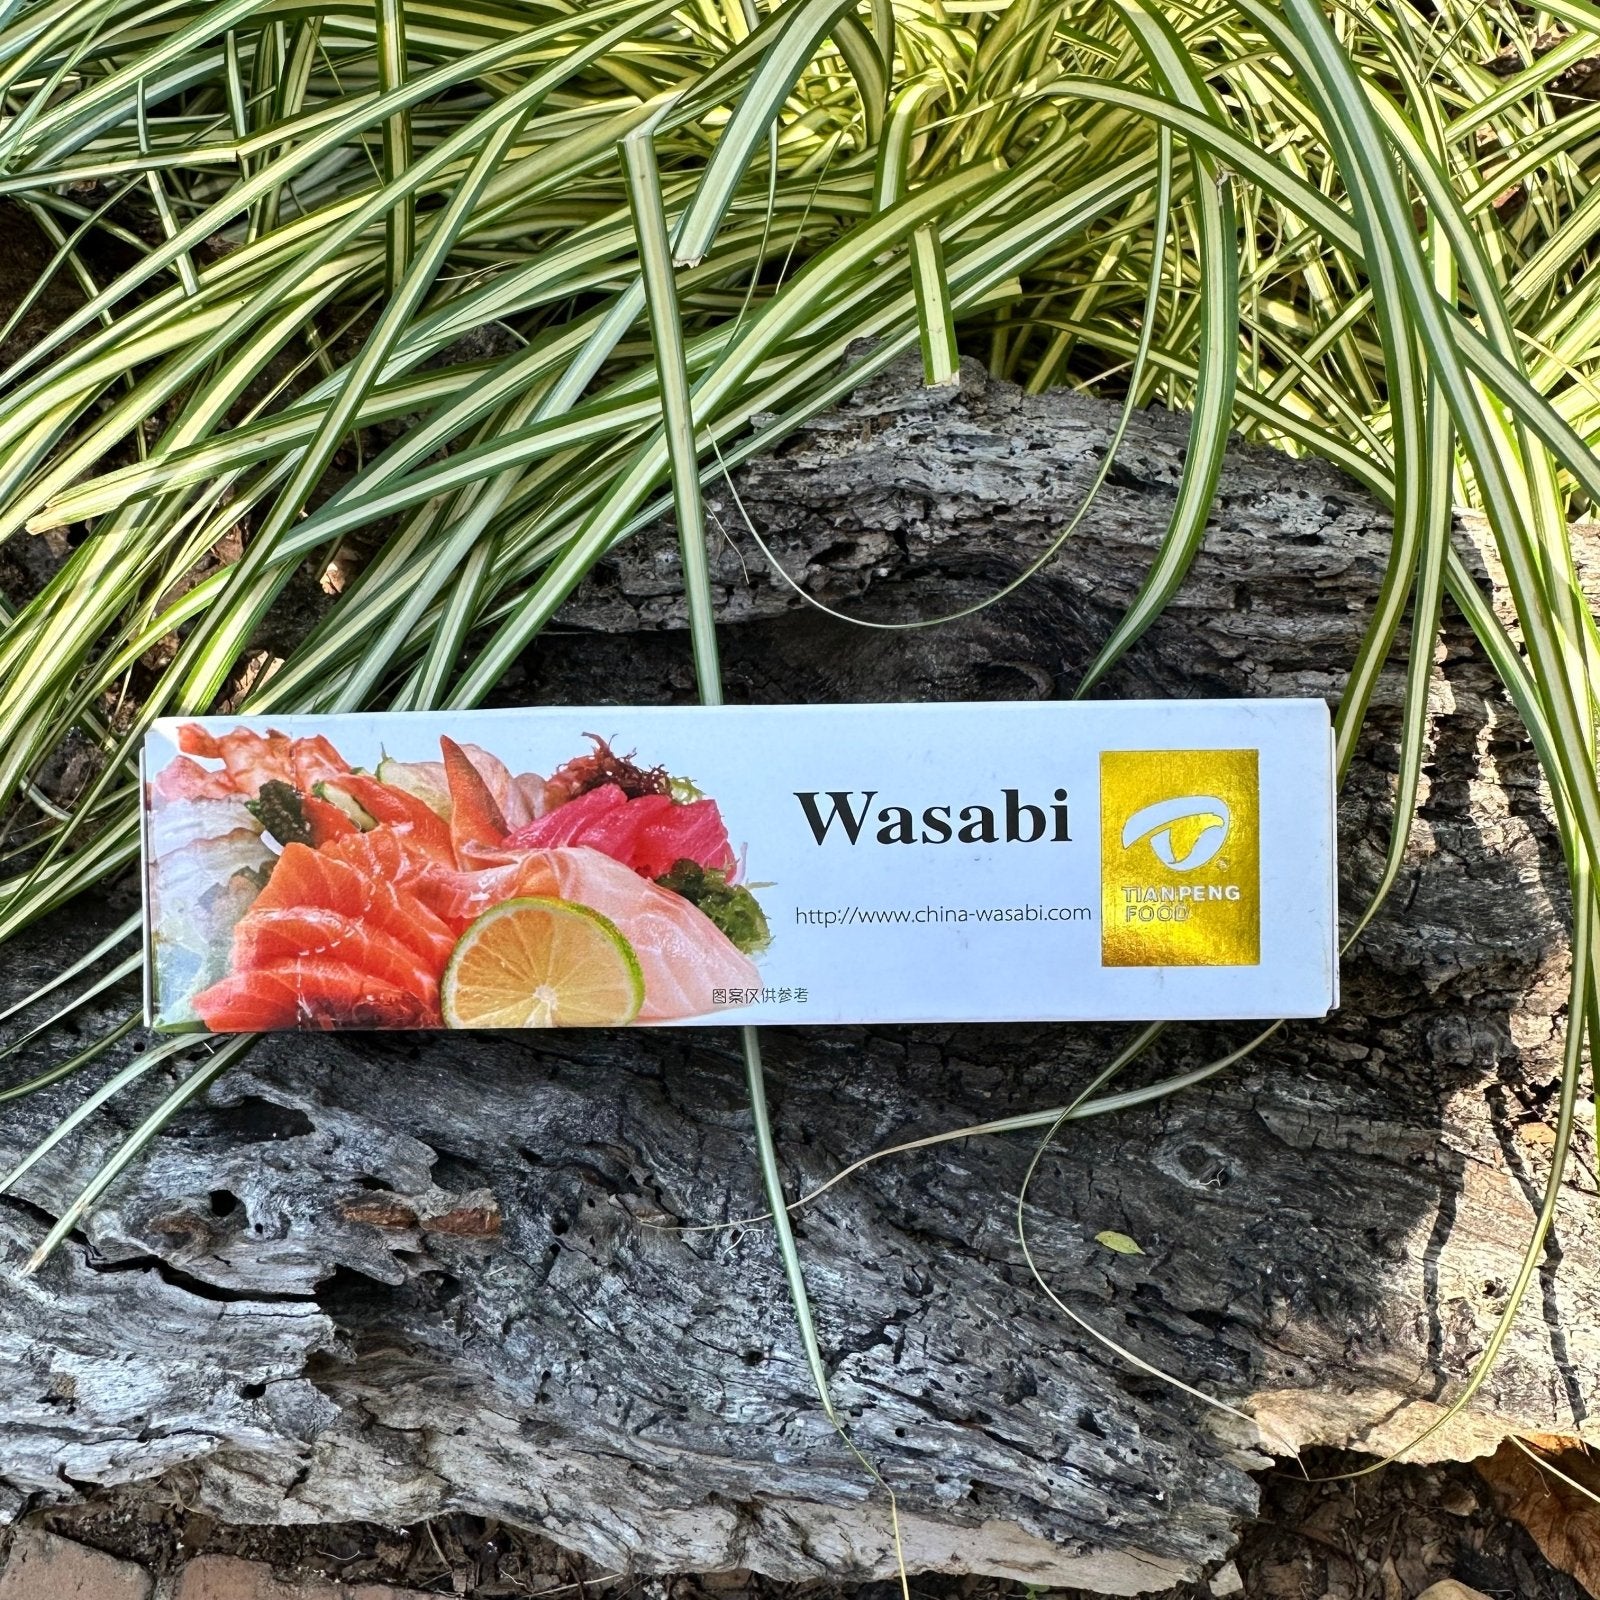 Wasabi Paste (43g) - The Deli